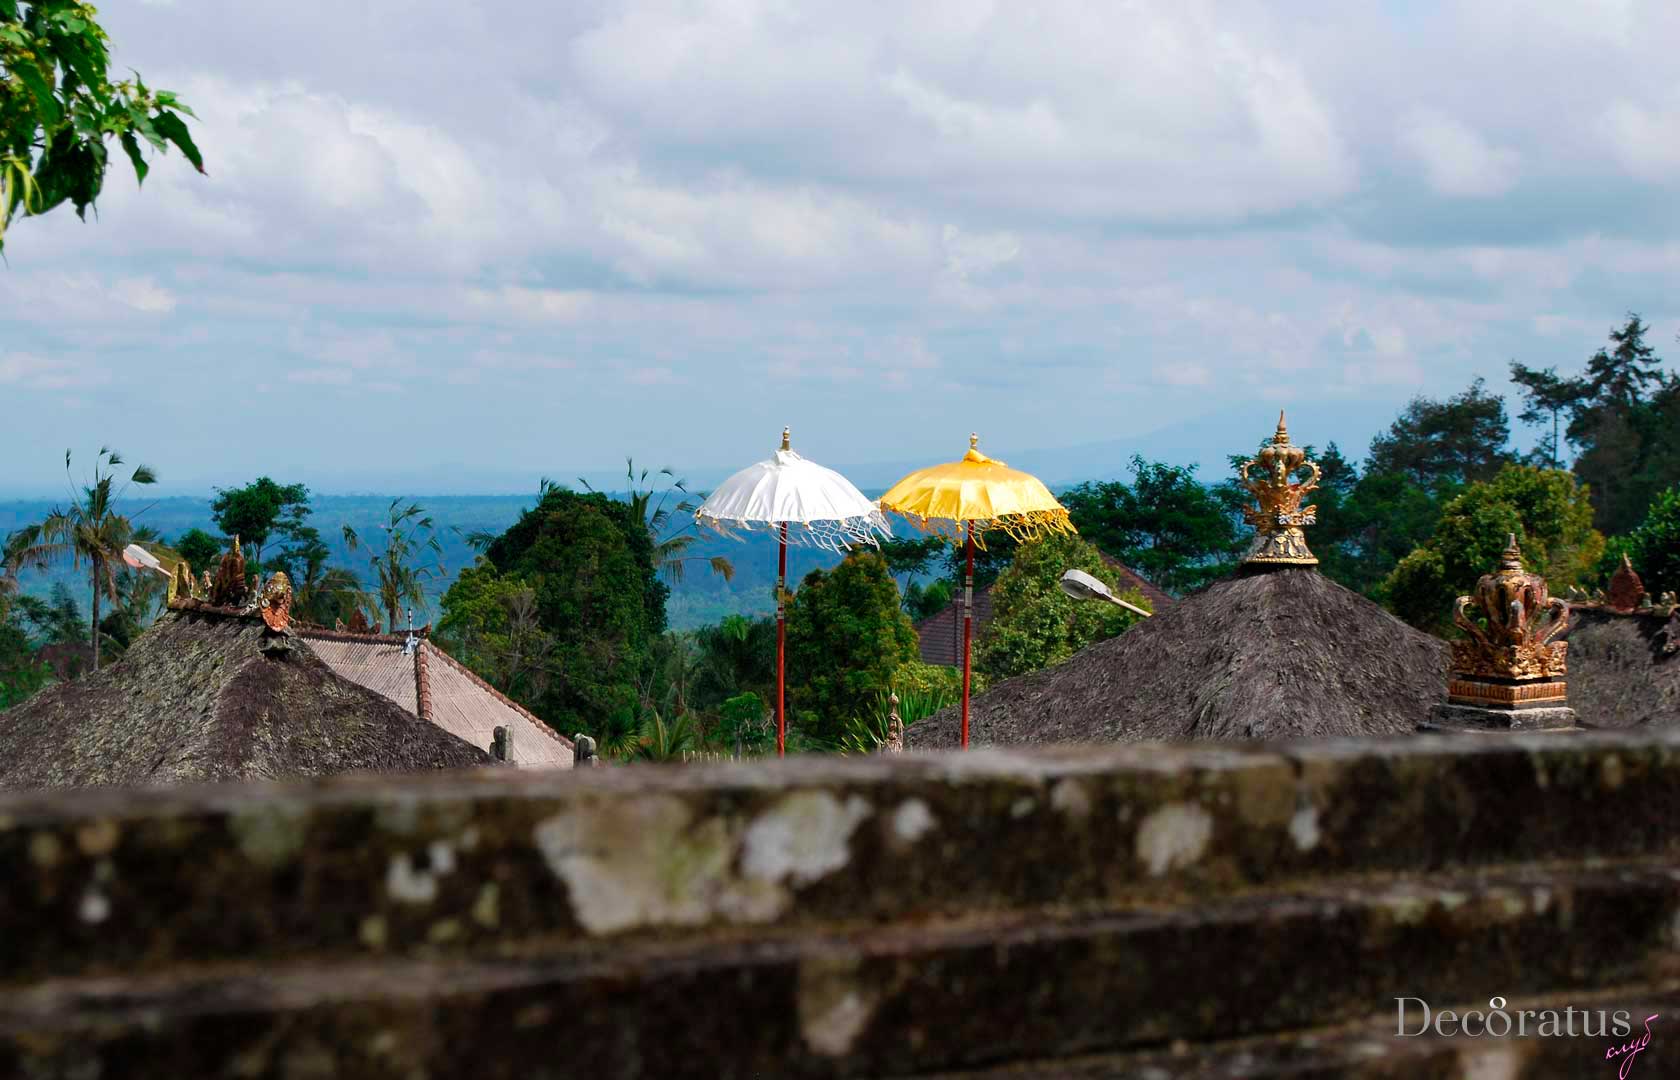 Балийский церемониальный зонтик - обязательный атрибут индуистского храма